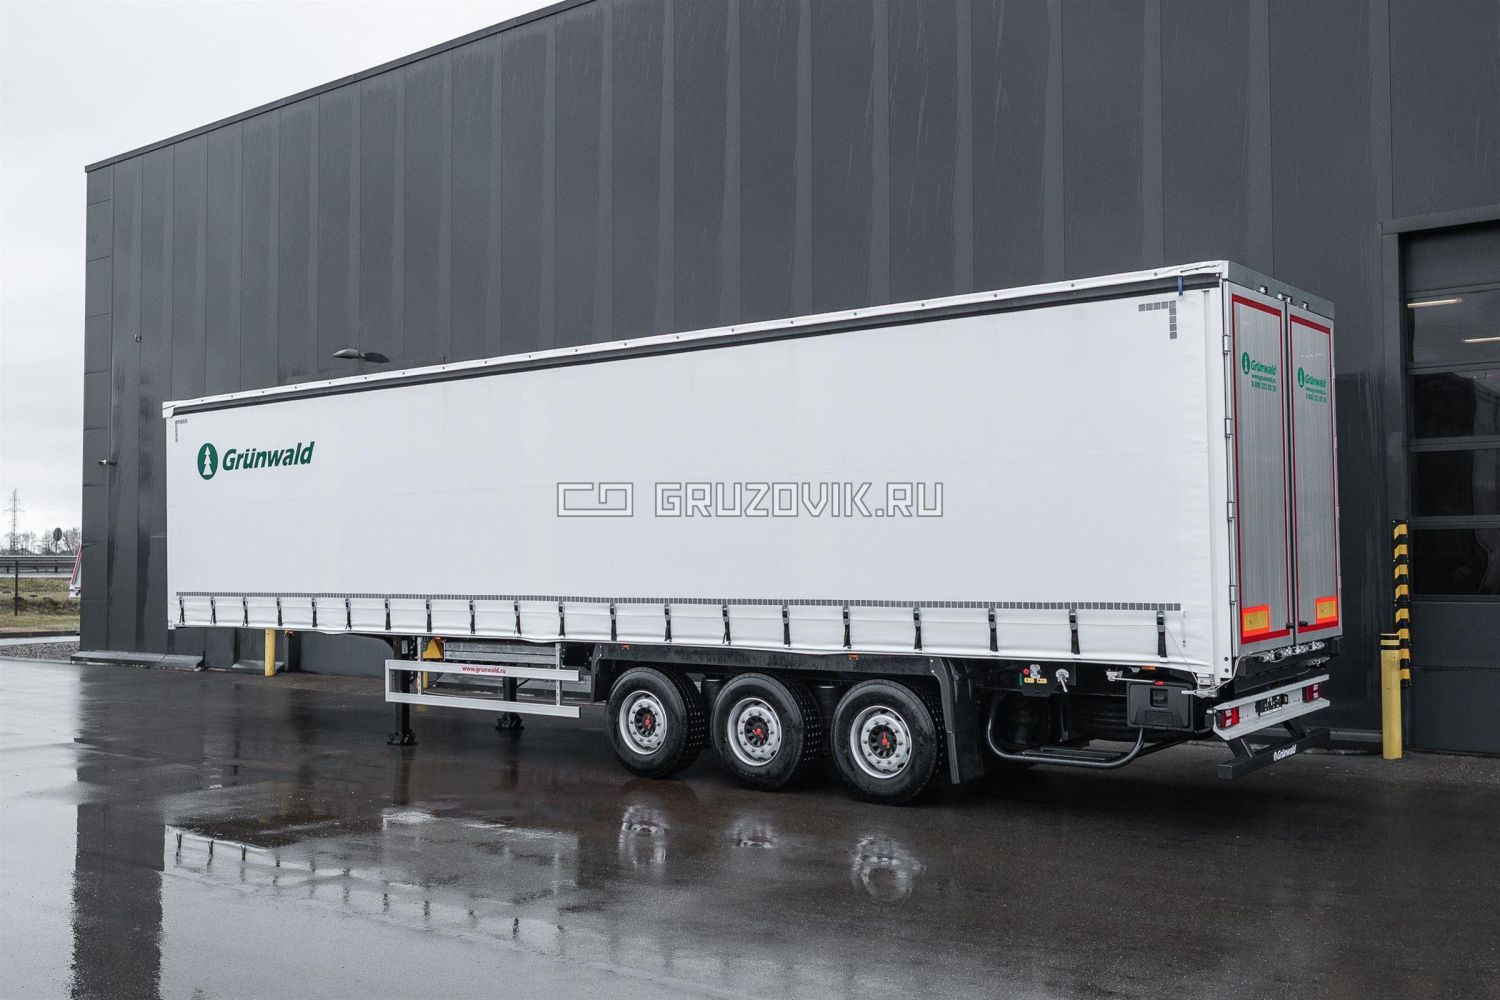 Новый Тентованный грузовик Grunwald Gr-CSt в продаже  на Gruzovik.ru, 3 500 000 ₽